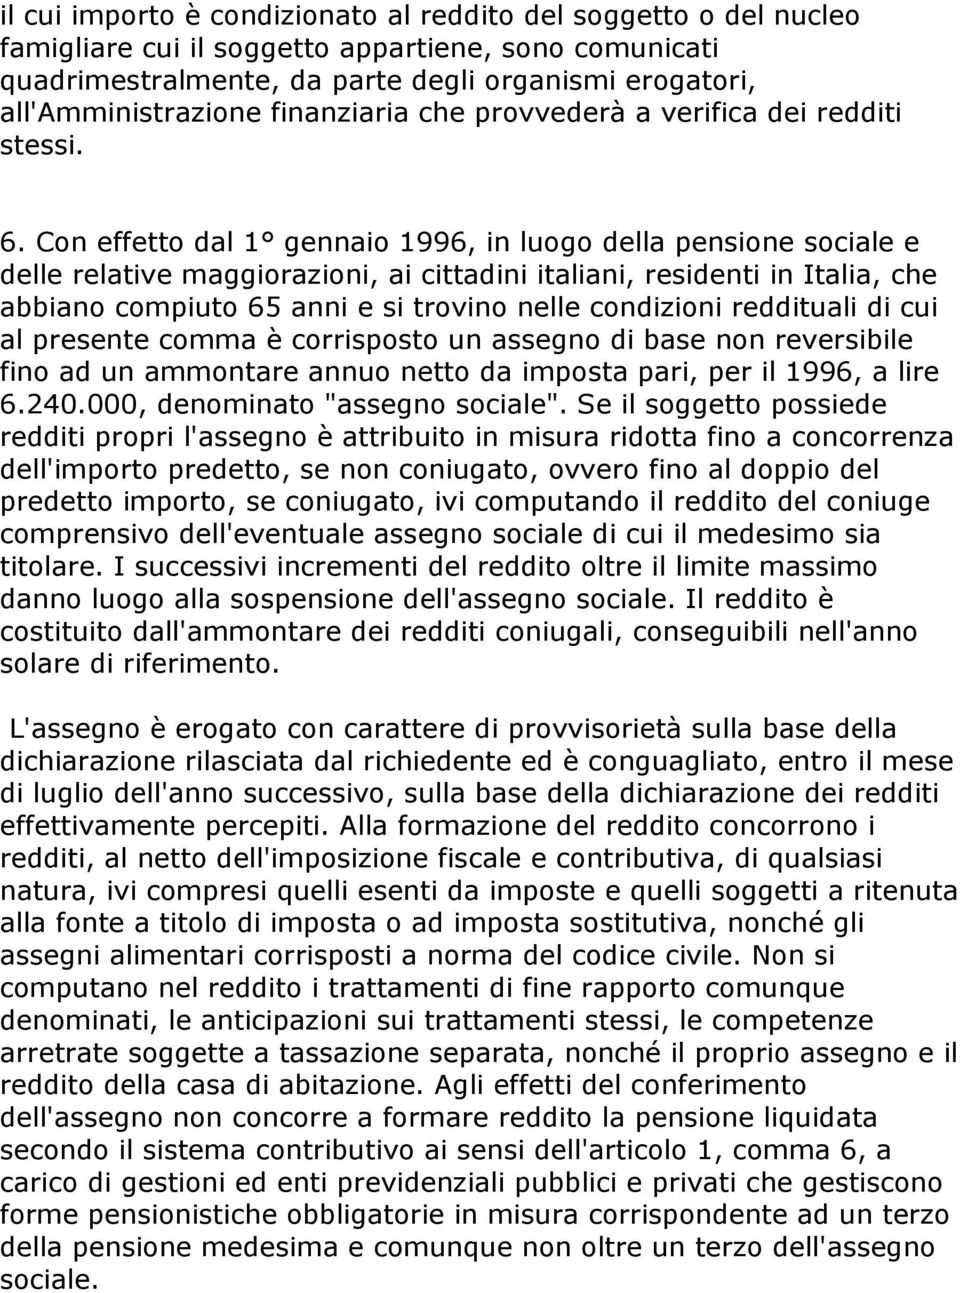 Con effetto dal 1 gennaio 1996, in luogo della pensione sociale e delle relative maggiorazioni, ai cittadini italiani, residenti in Italia, che abbiano compiuto 65 anni e si trovino nelle condizioni